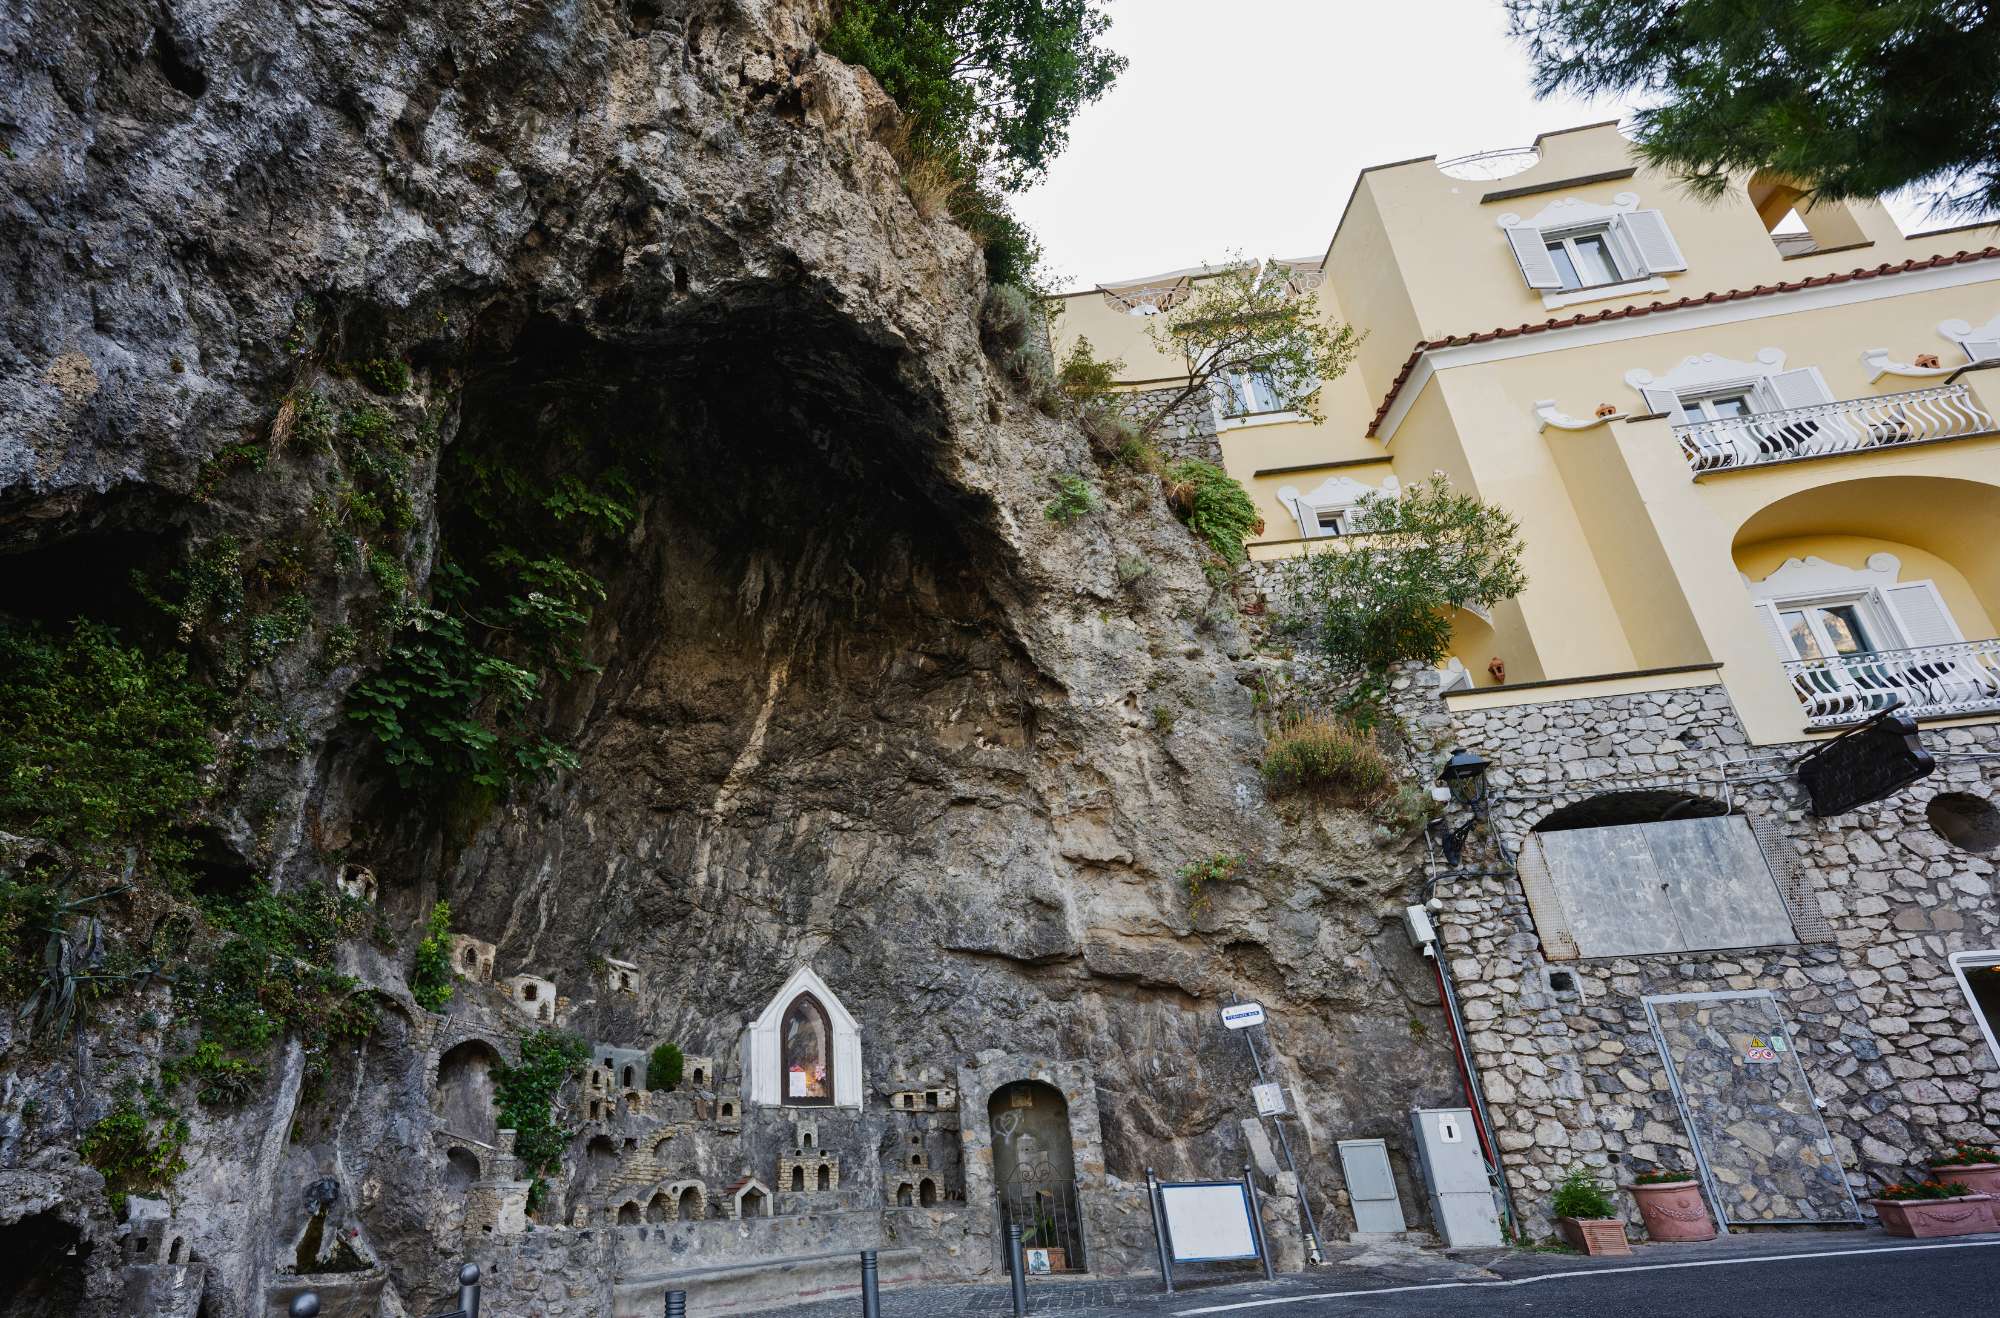 Grotta di Fornillo